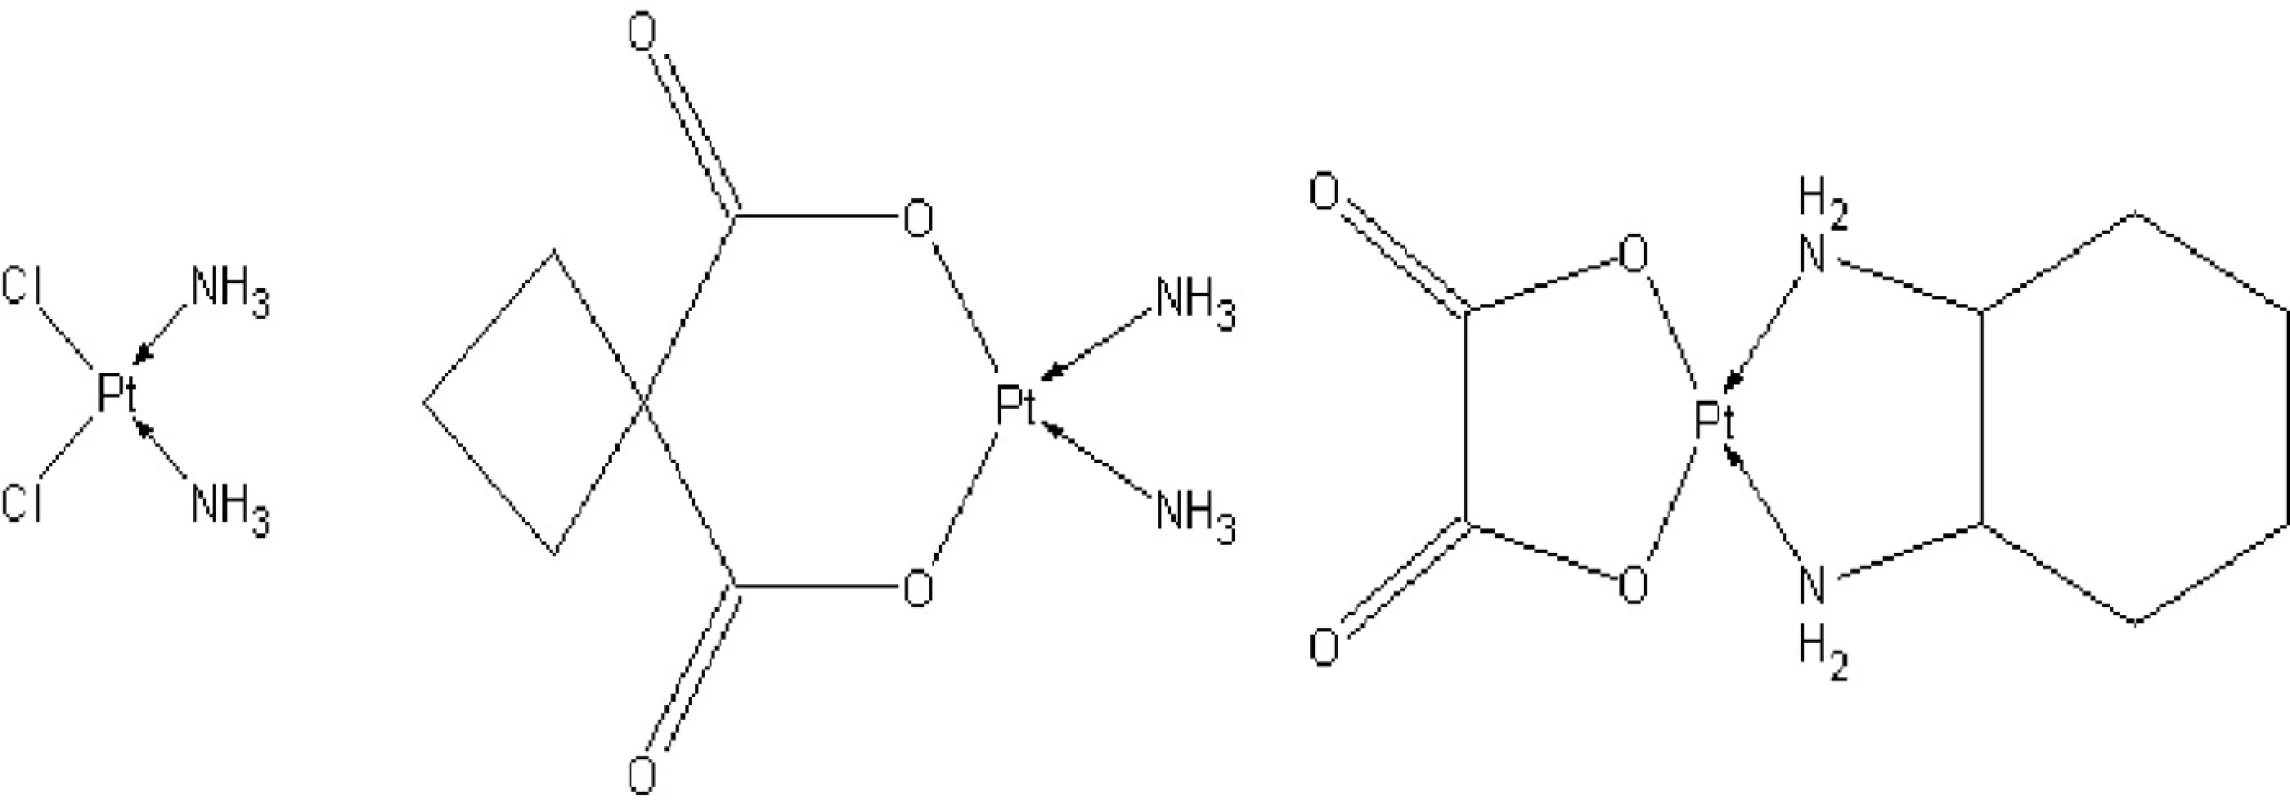 Strukturní vzorce platnatých komplexů využívaných jako cytostatika
(a) cisplatina,
(b) karboplatina,
(c)oxaliplatina.